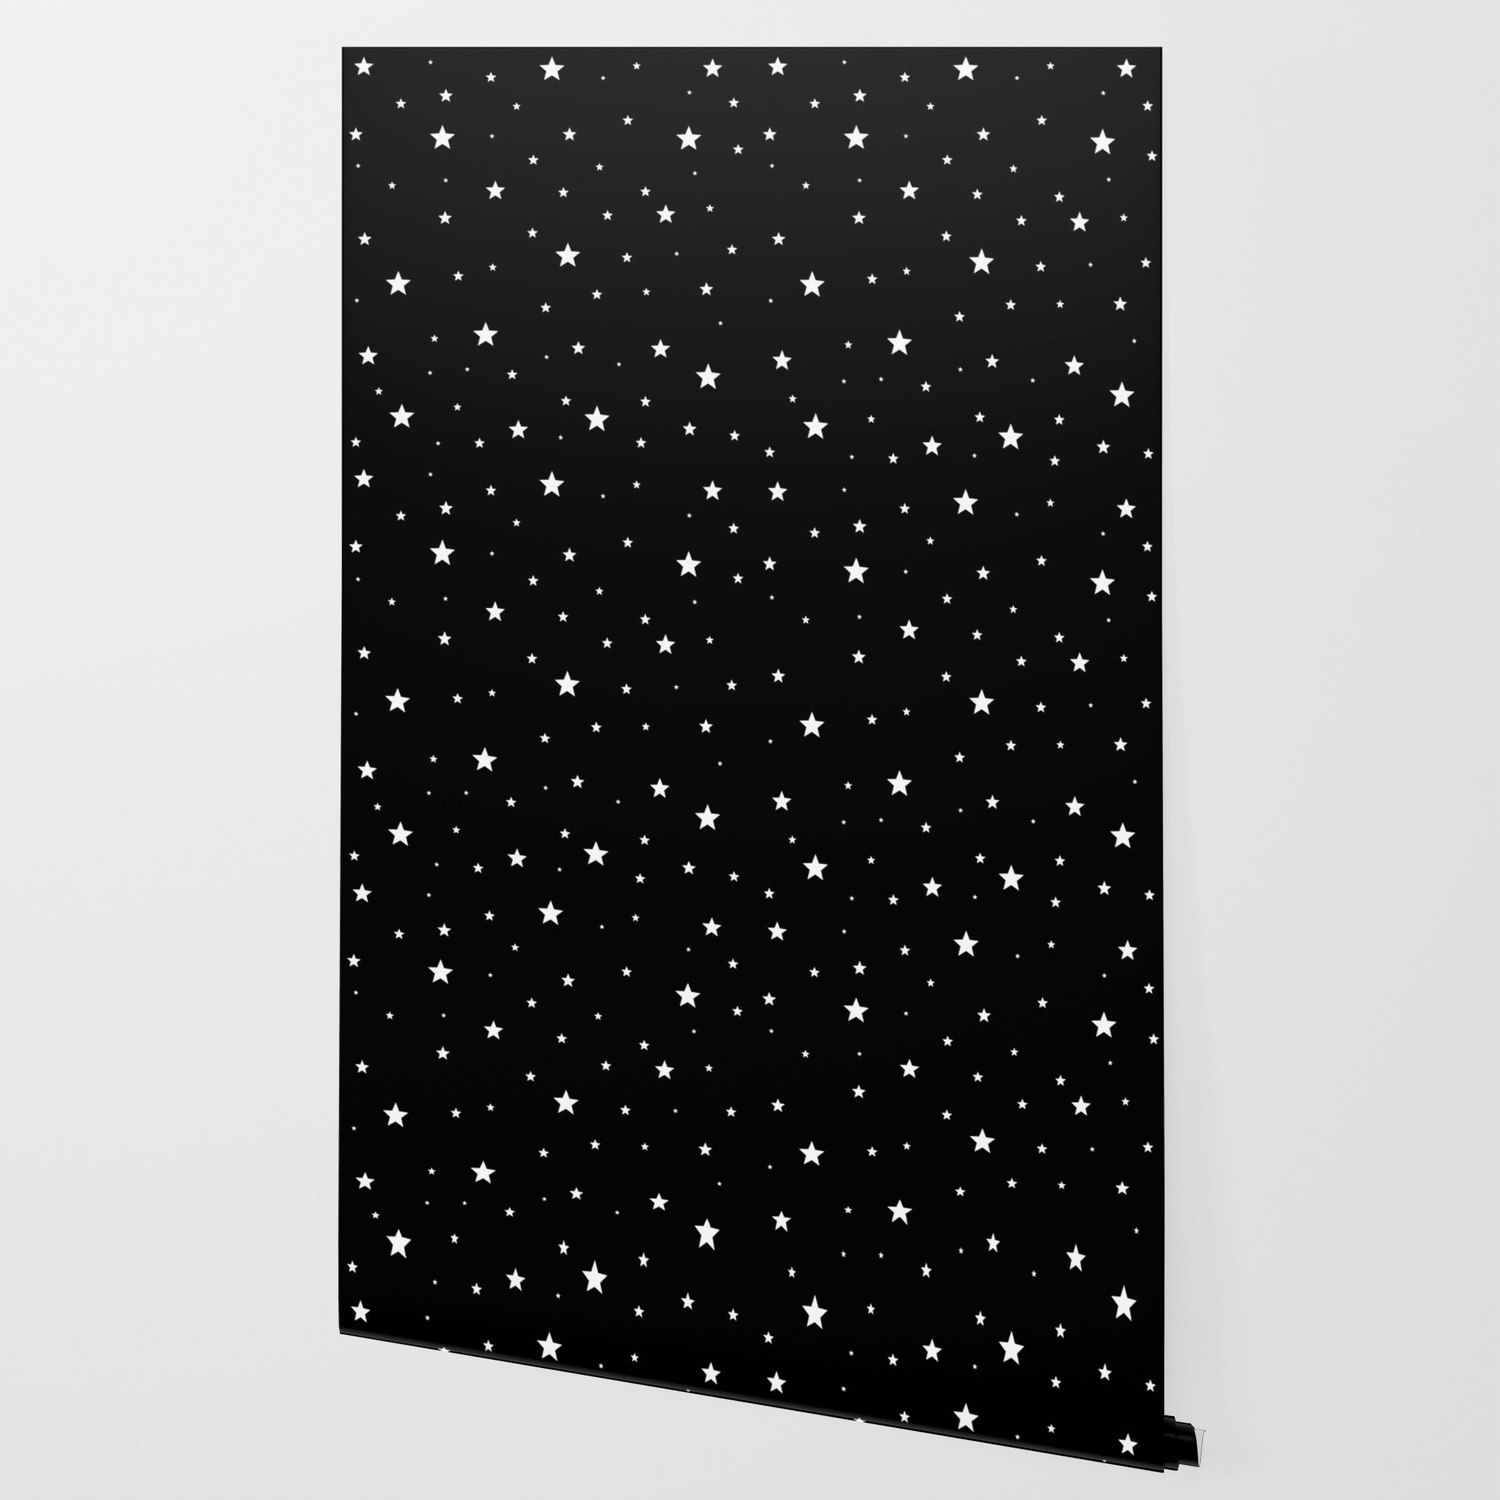 Scattered Stars White On Black Wallpaper By Laurabethlove Society6